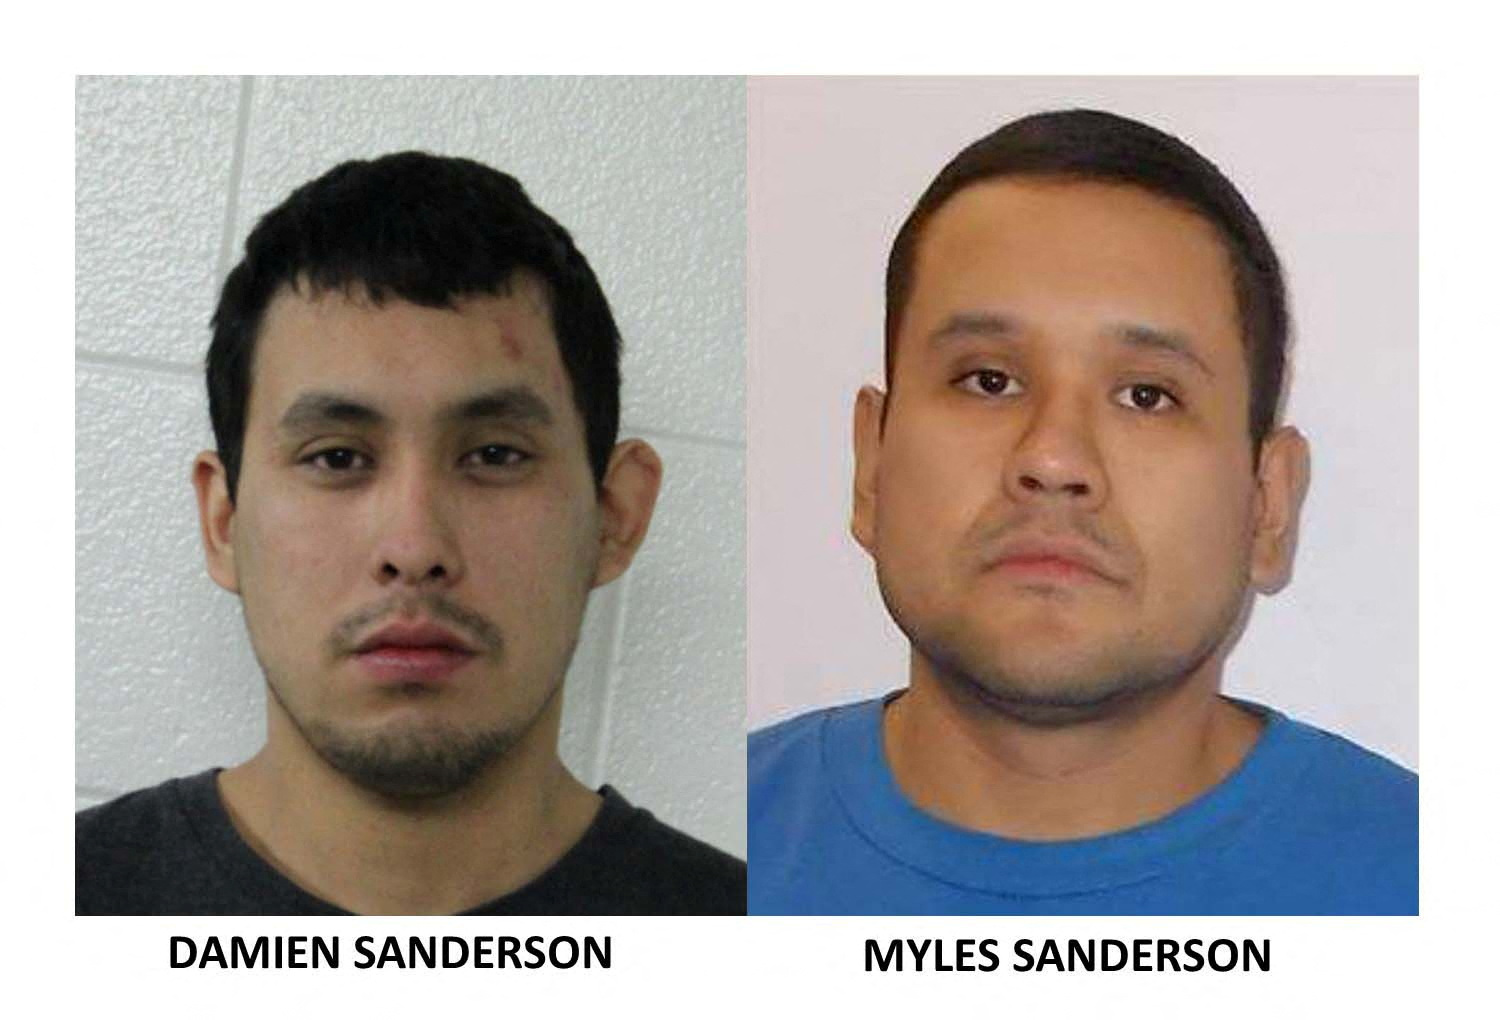 Los agresores, identificados como Damien Sanderson y Myles Sanderson, son buscados por la Policía canadiense (RCMP/Handout via REUTERS)